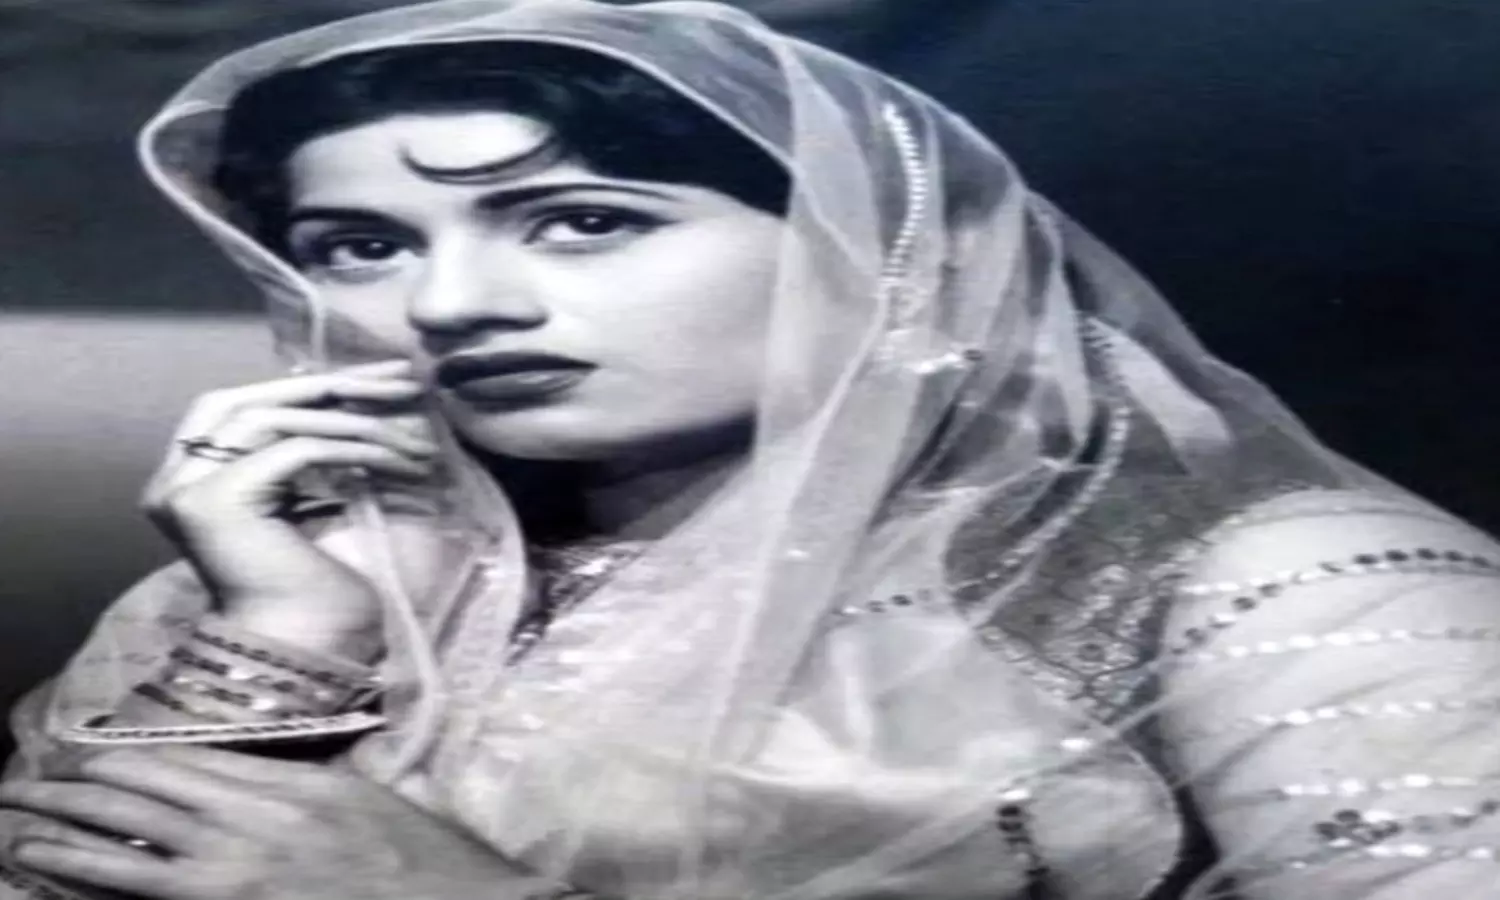 Madhubala Birthday Special : किशोर कुमार से शादी के बाद खुश नहीं थी मधुबाला, एकाकी जिंदगी जीती रो पड़ती थीं